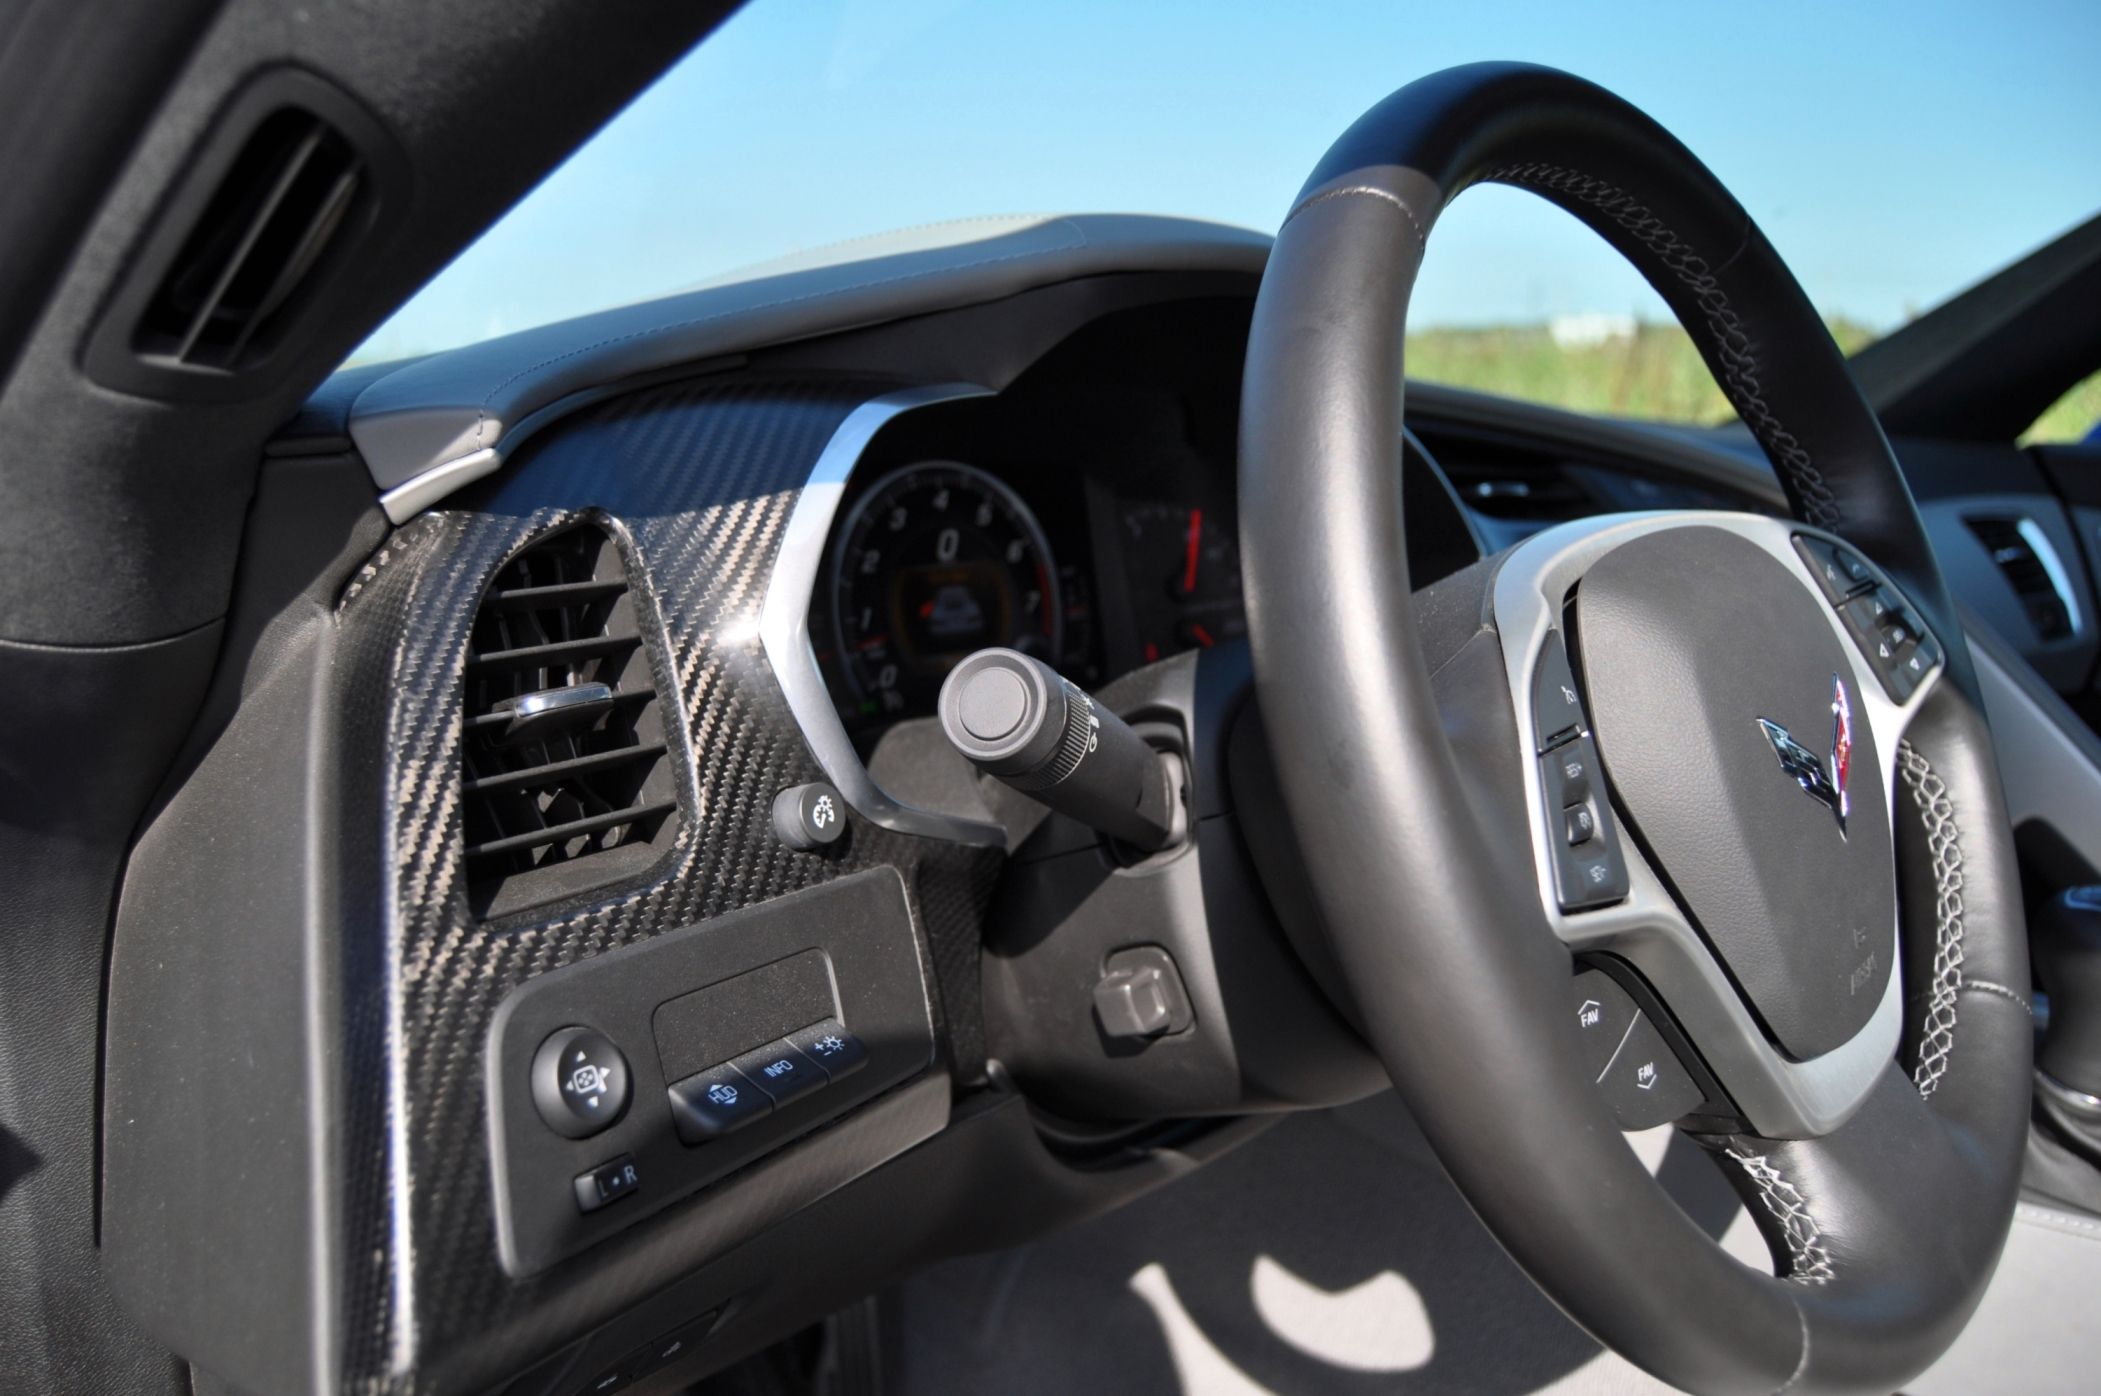 2014 Chevrolet Corvette Stingray - Driven